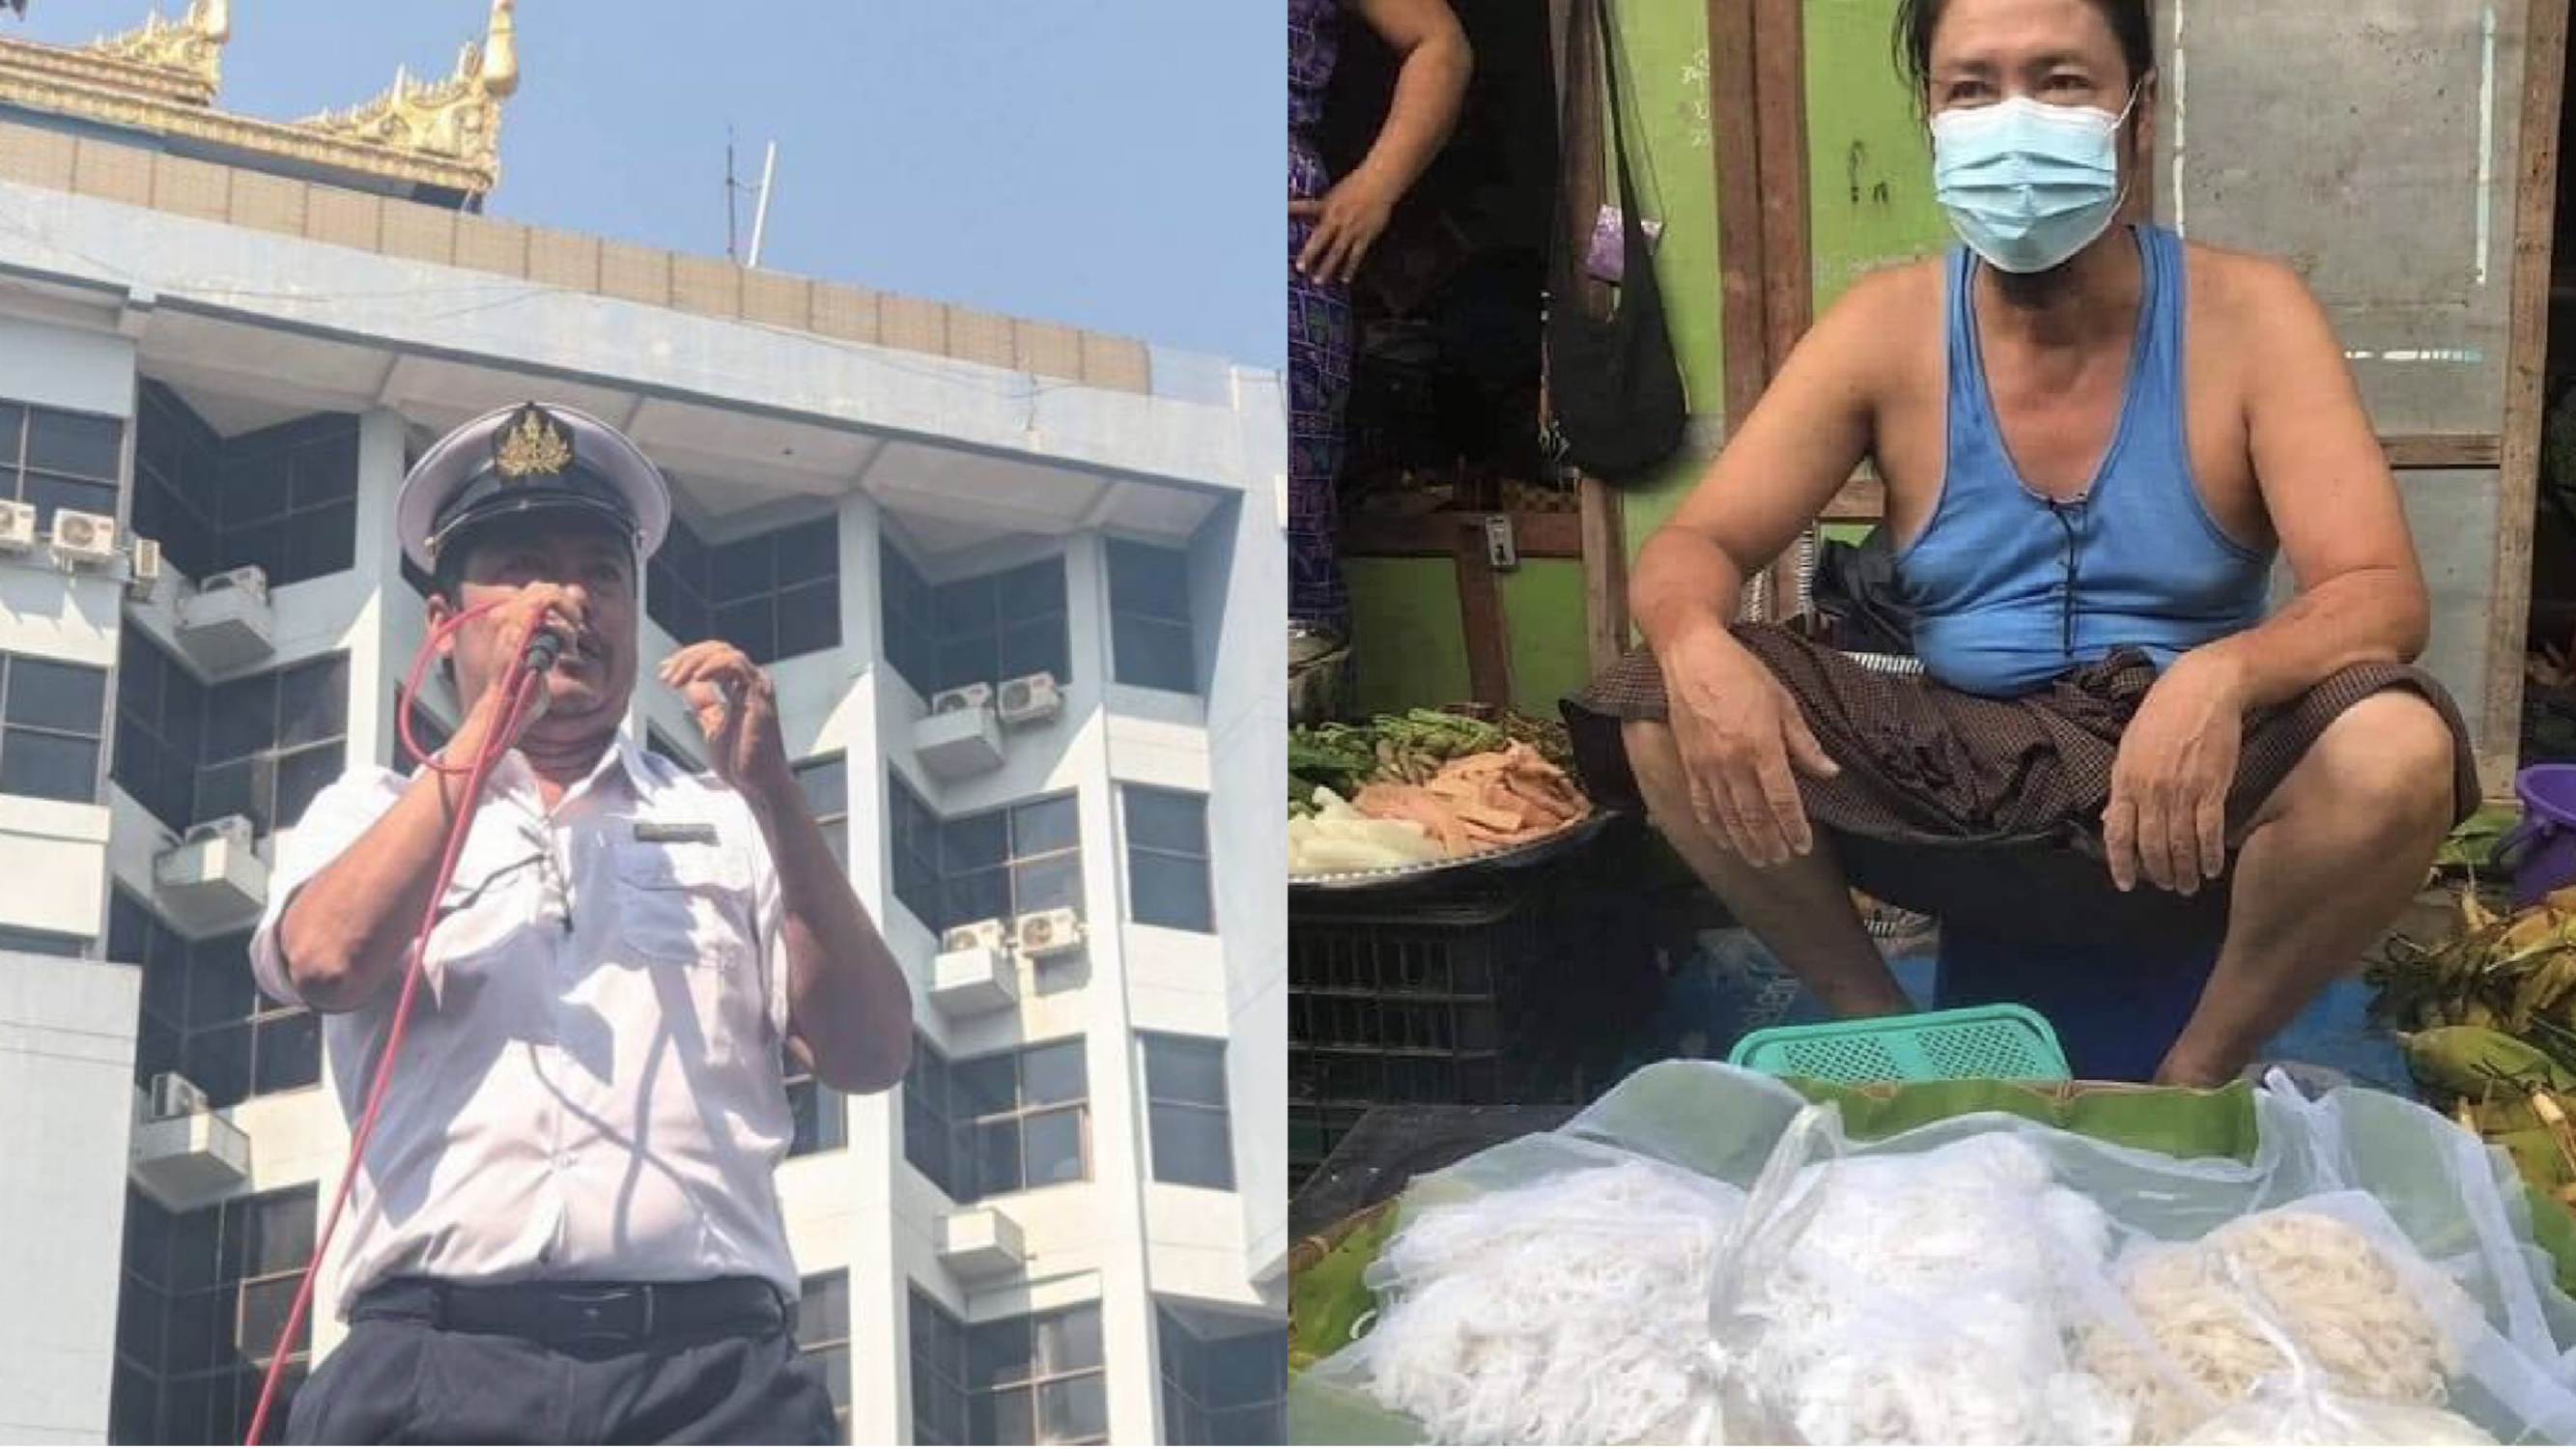 철도 기관사 윈 코 오가 집회 도중 발언하고 있다. 파업을 주도한 혐의로 해고된 윈 코 오는 시장에서 국수를 팔면서 생계를 이어갔지만, 괴한들에게 끌려가 살해당했다. [사진 미얀마 나우]